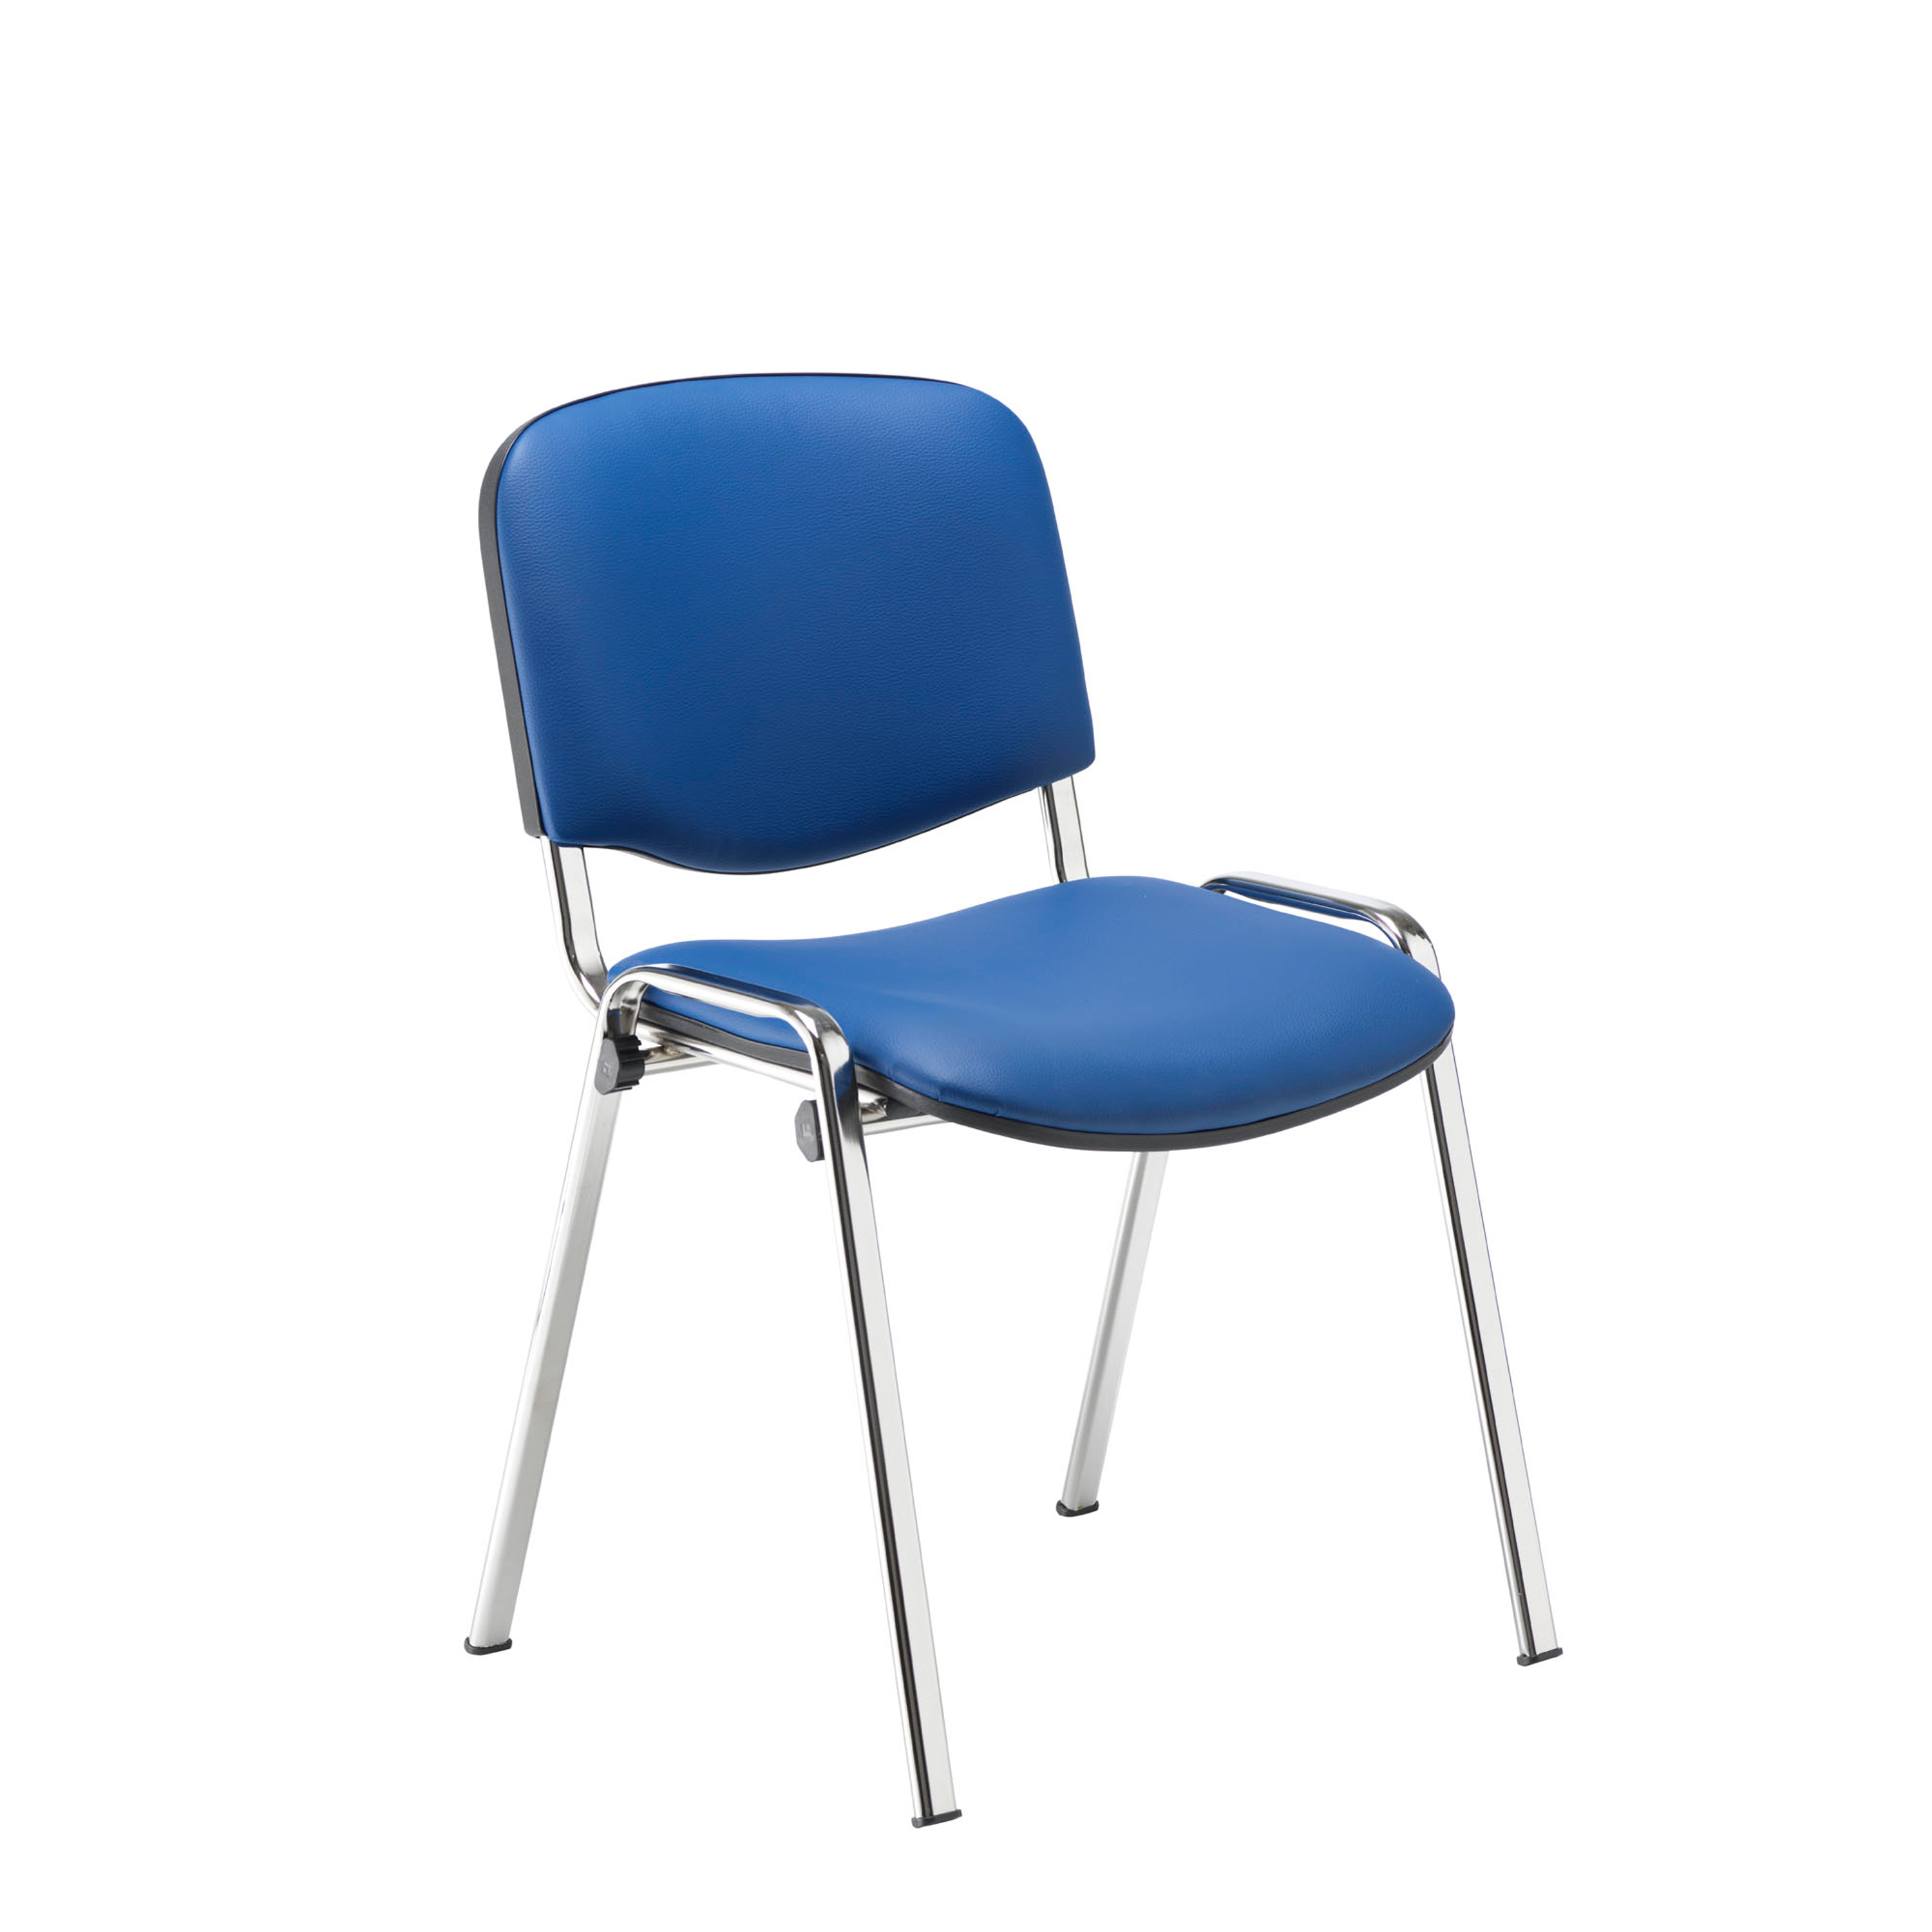 Chrome Club Meeting Room Chair - Blue